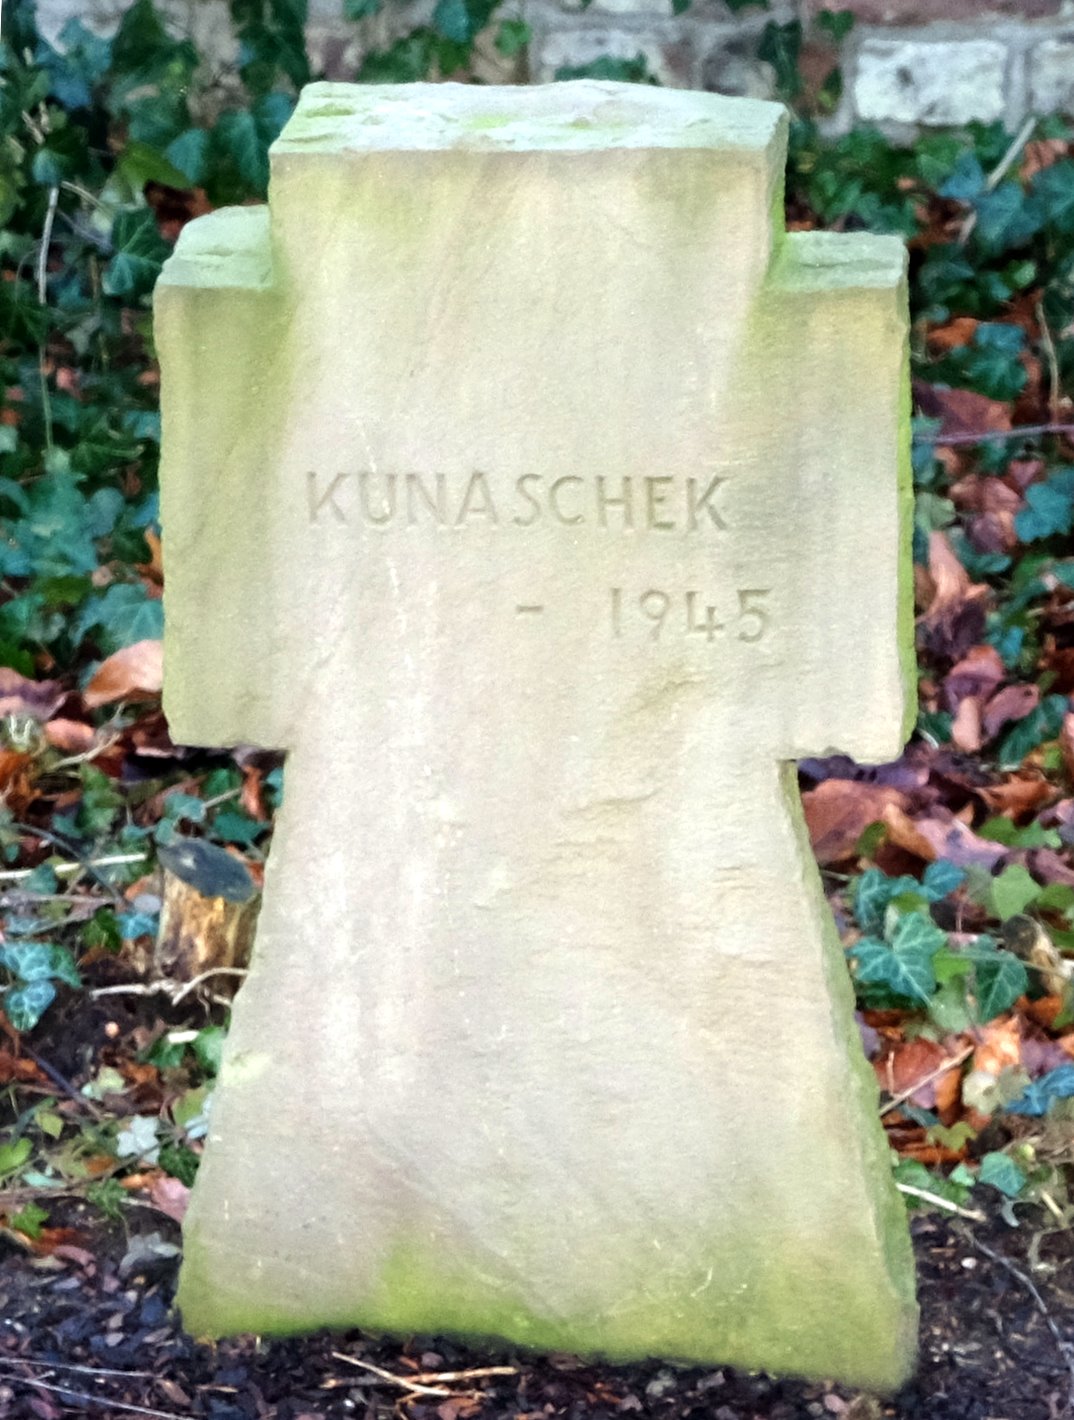 Kunaschek